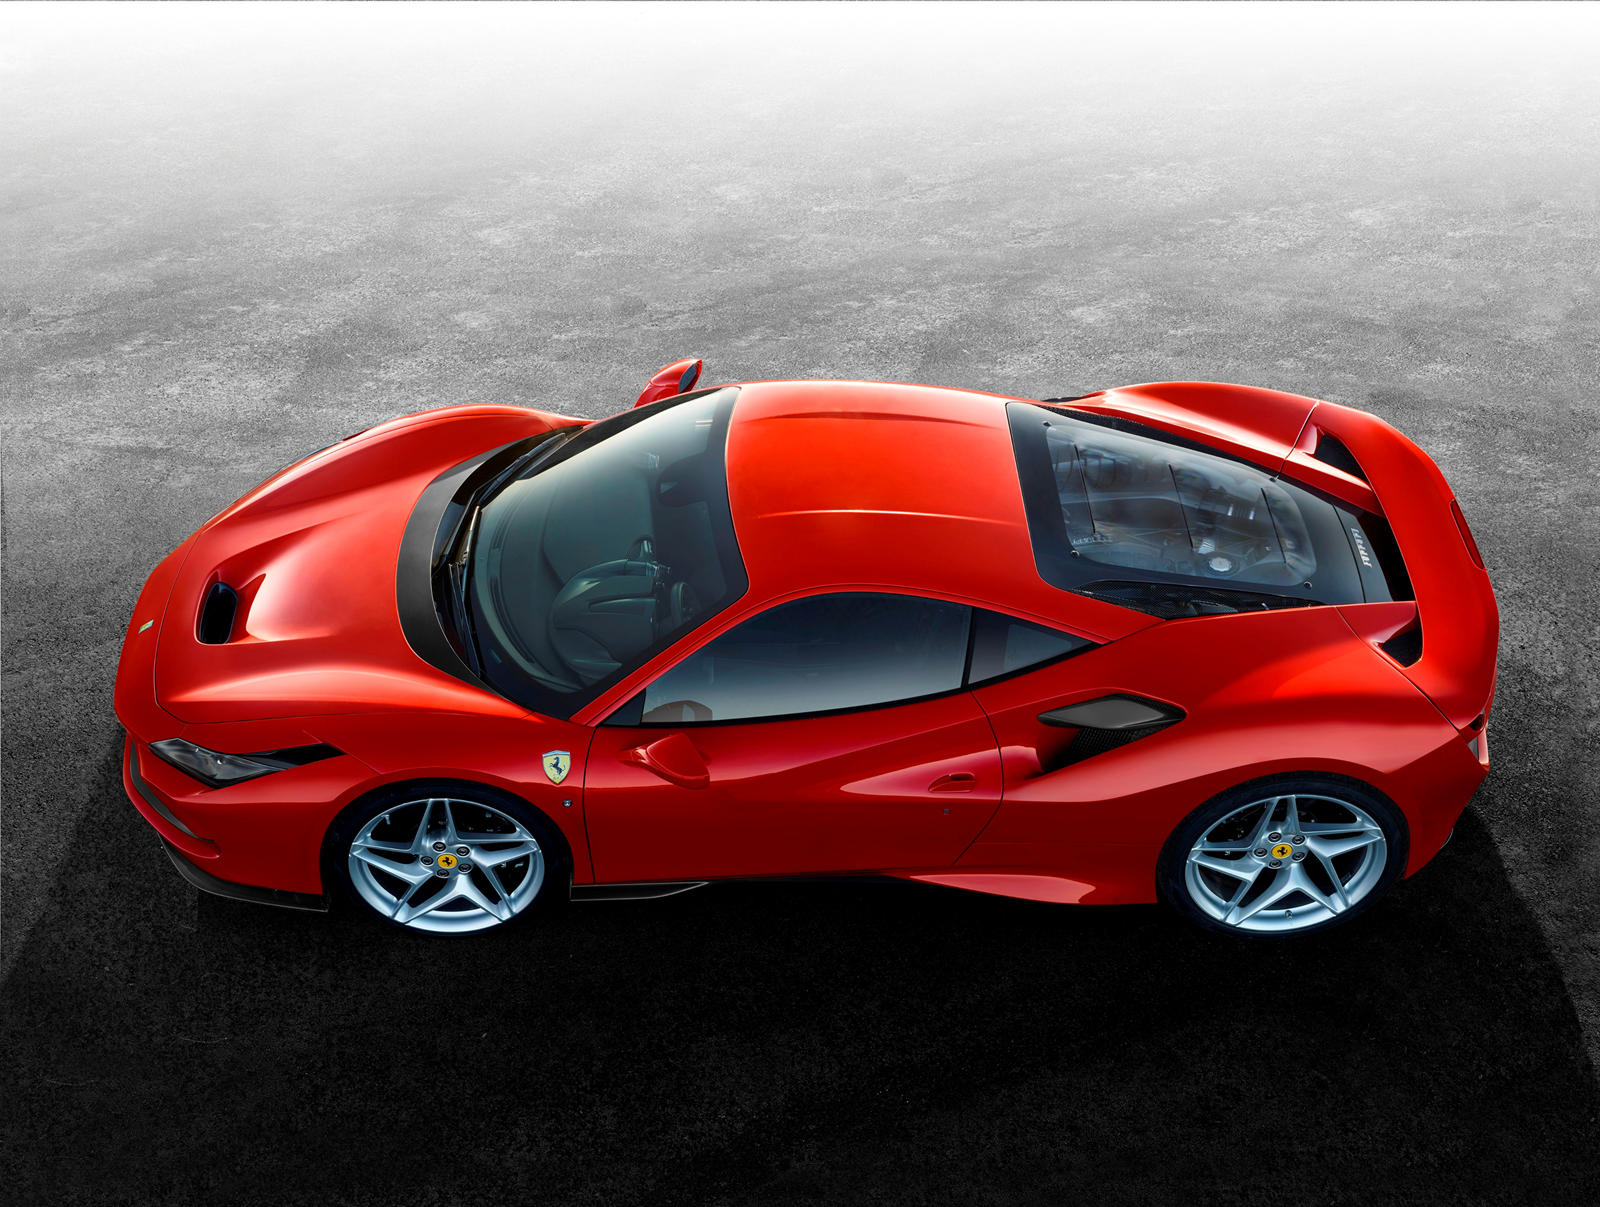 Ferrari F8 Tributo Review, Trims, Specs, Price, New Interior Features